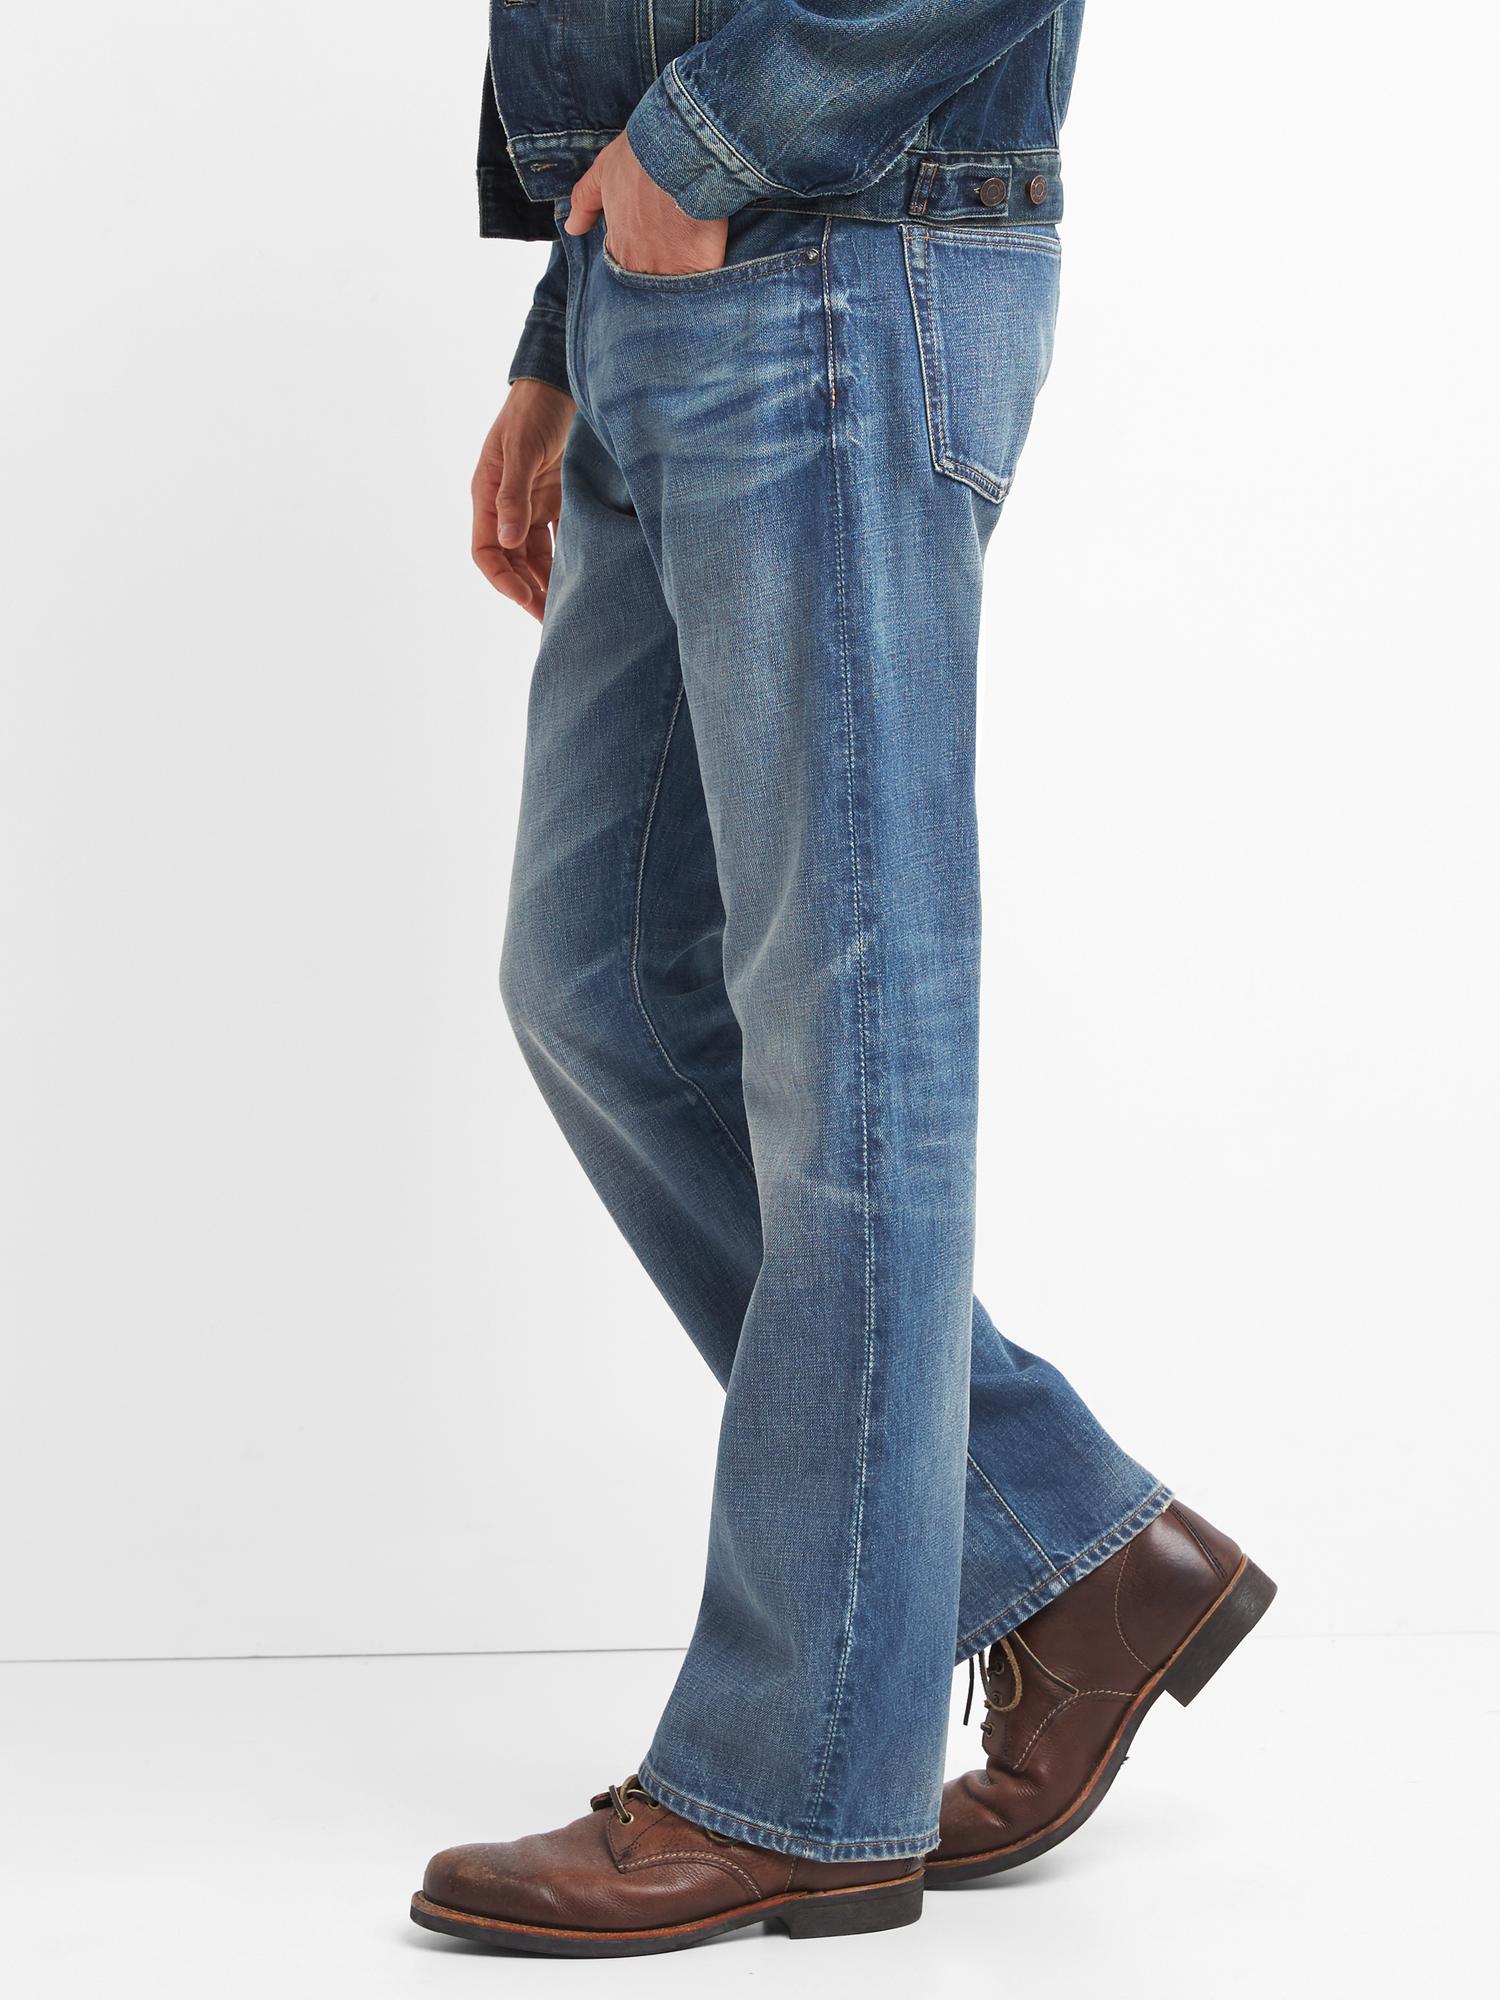 gap bootcut jeans